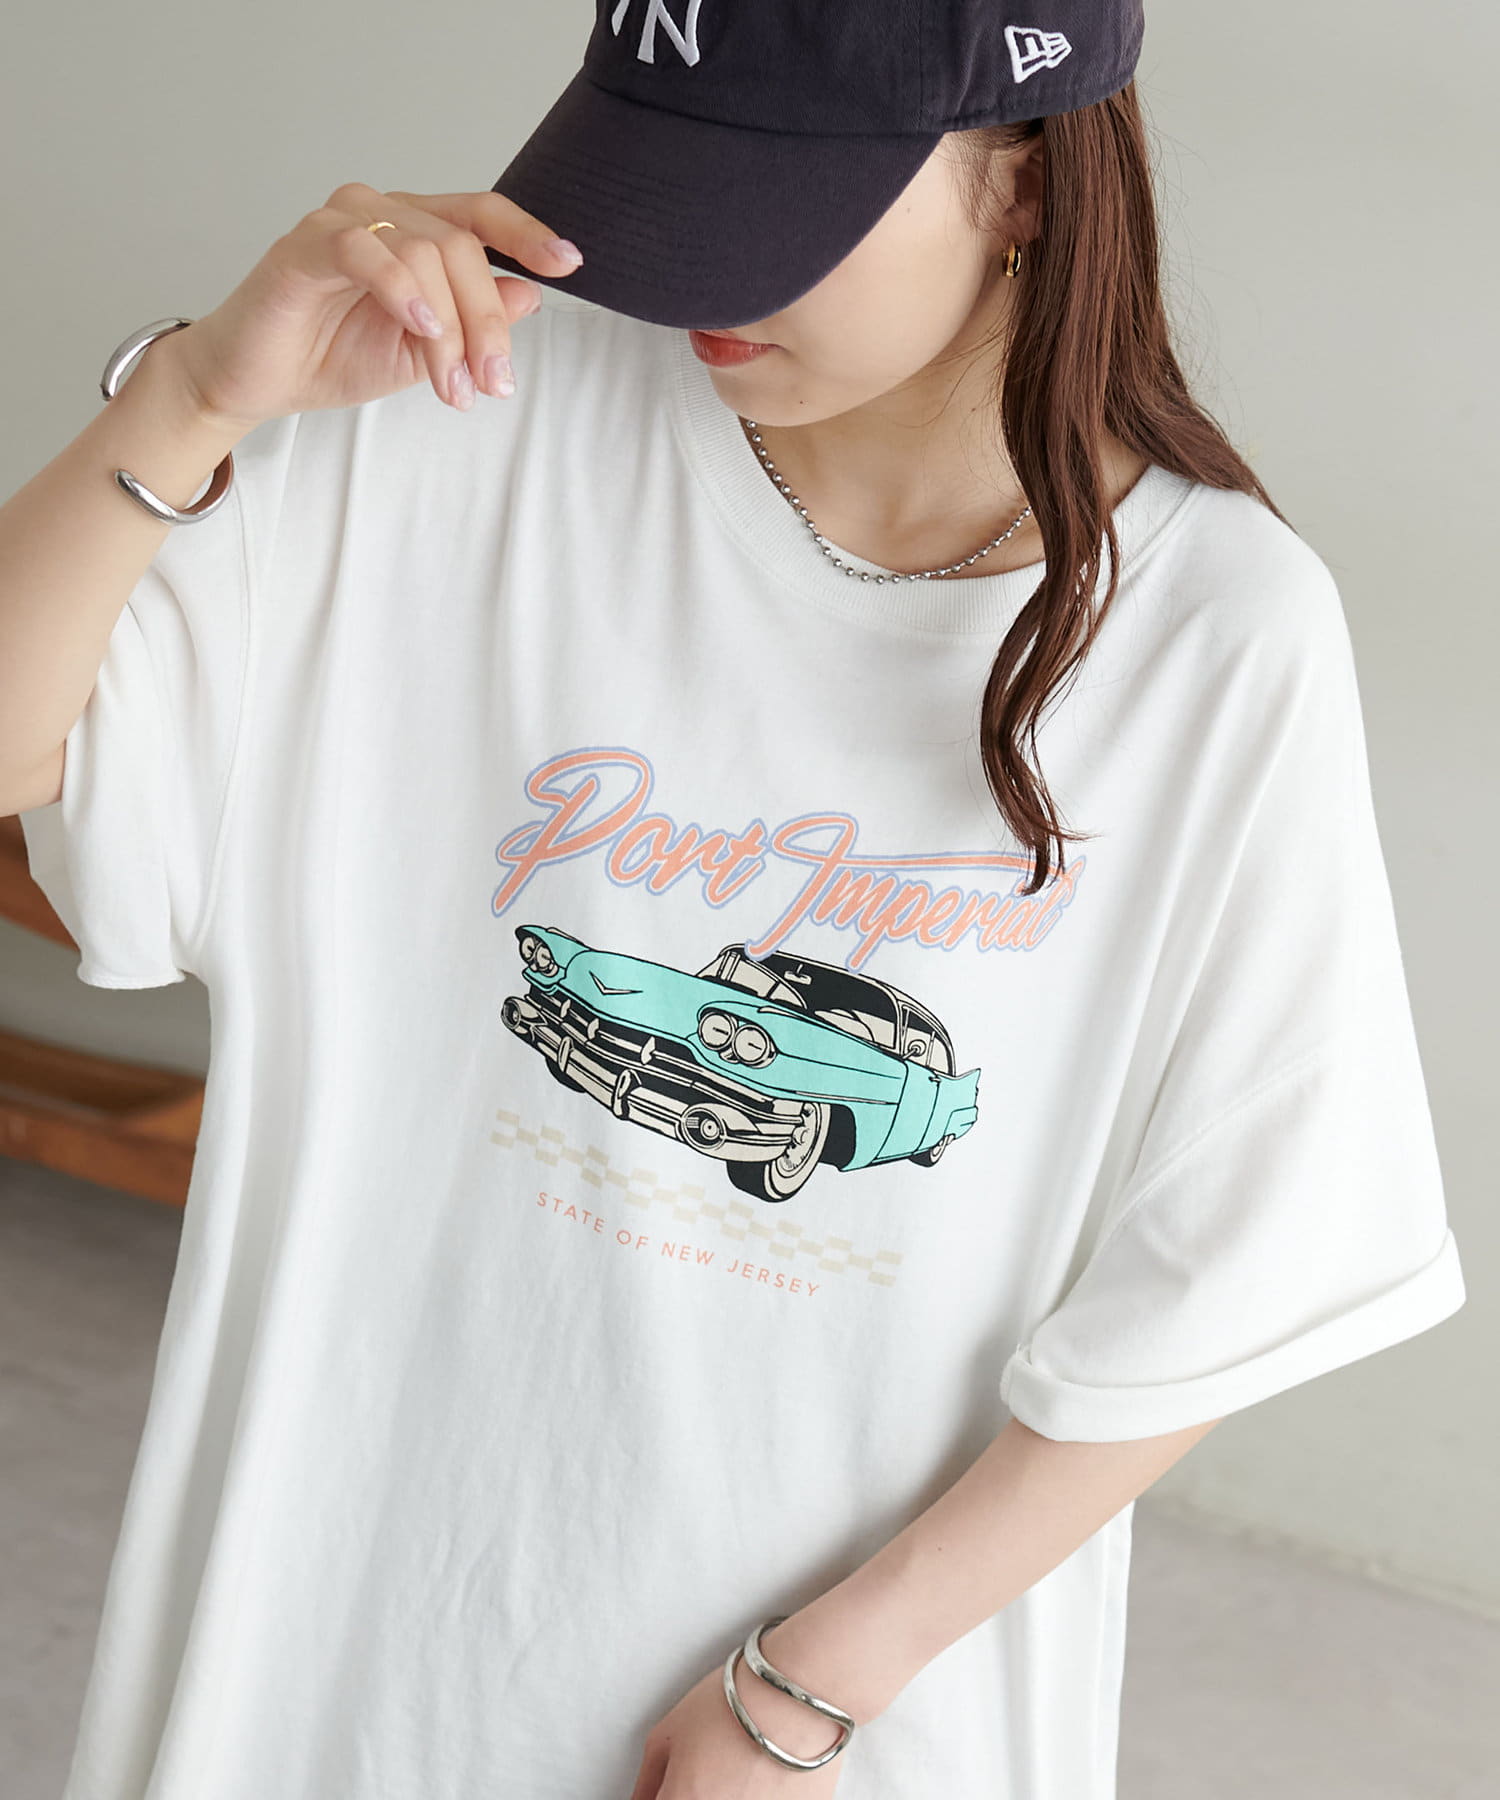 DISCOAT(ディスコート) 【ユニセックス】ピグメントカープリントTシャツ